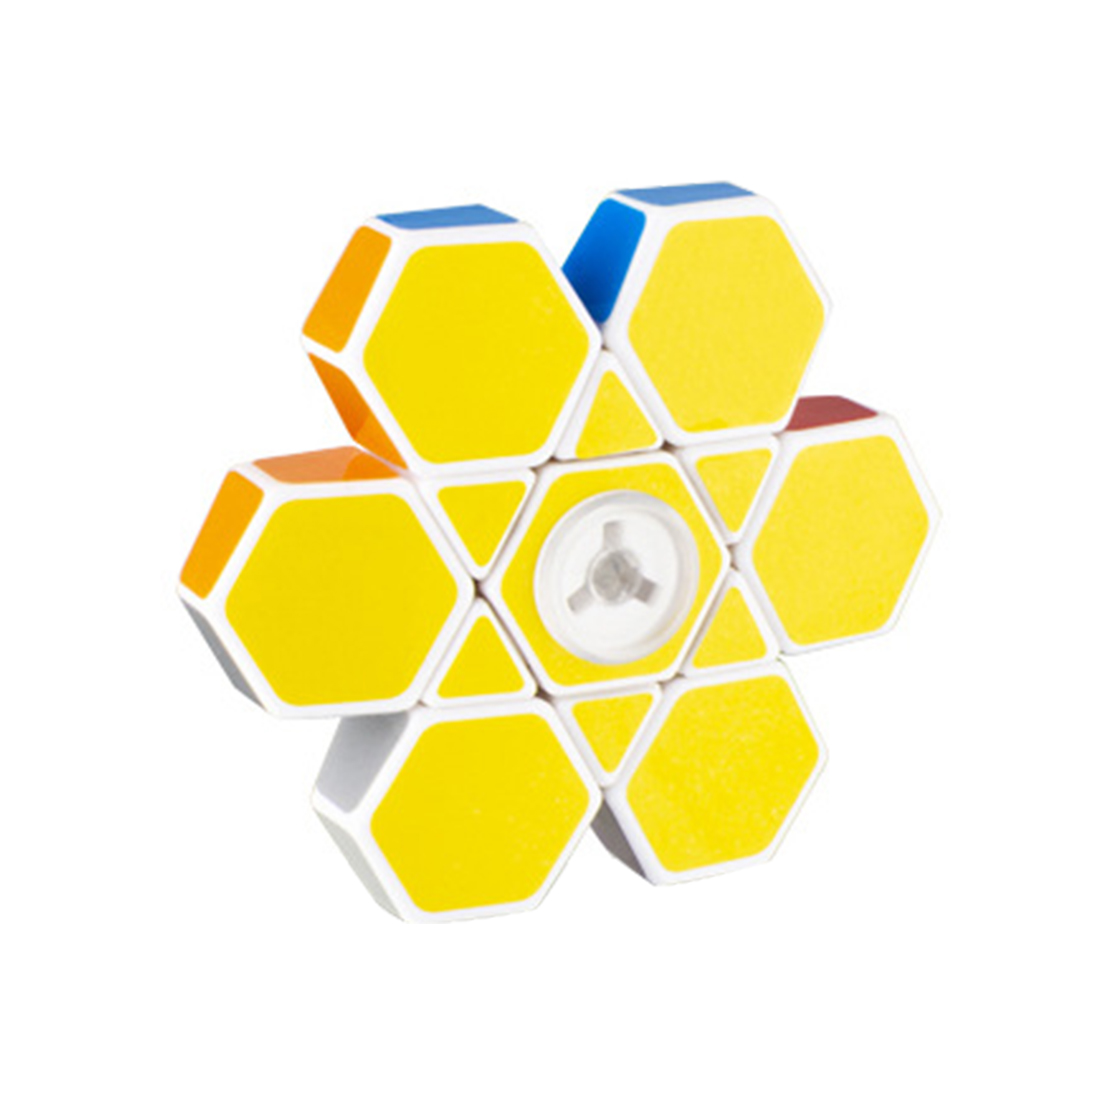 DianSheng 1x3x3 Spinner Speed Cube